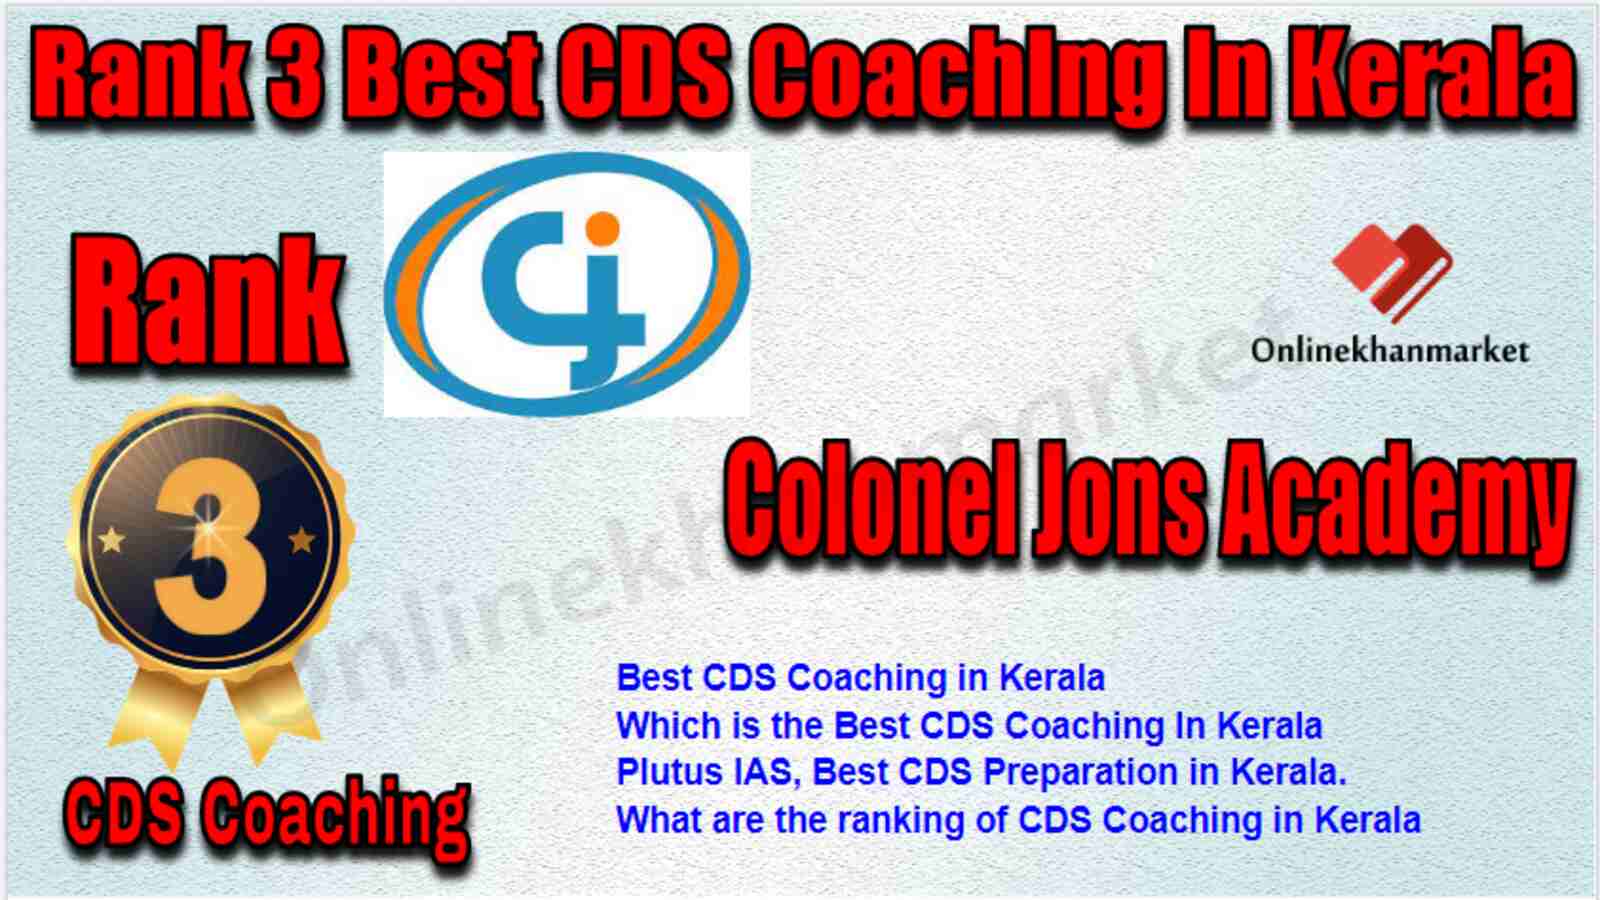 Rank 3 best CDS Coaching in Kerala